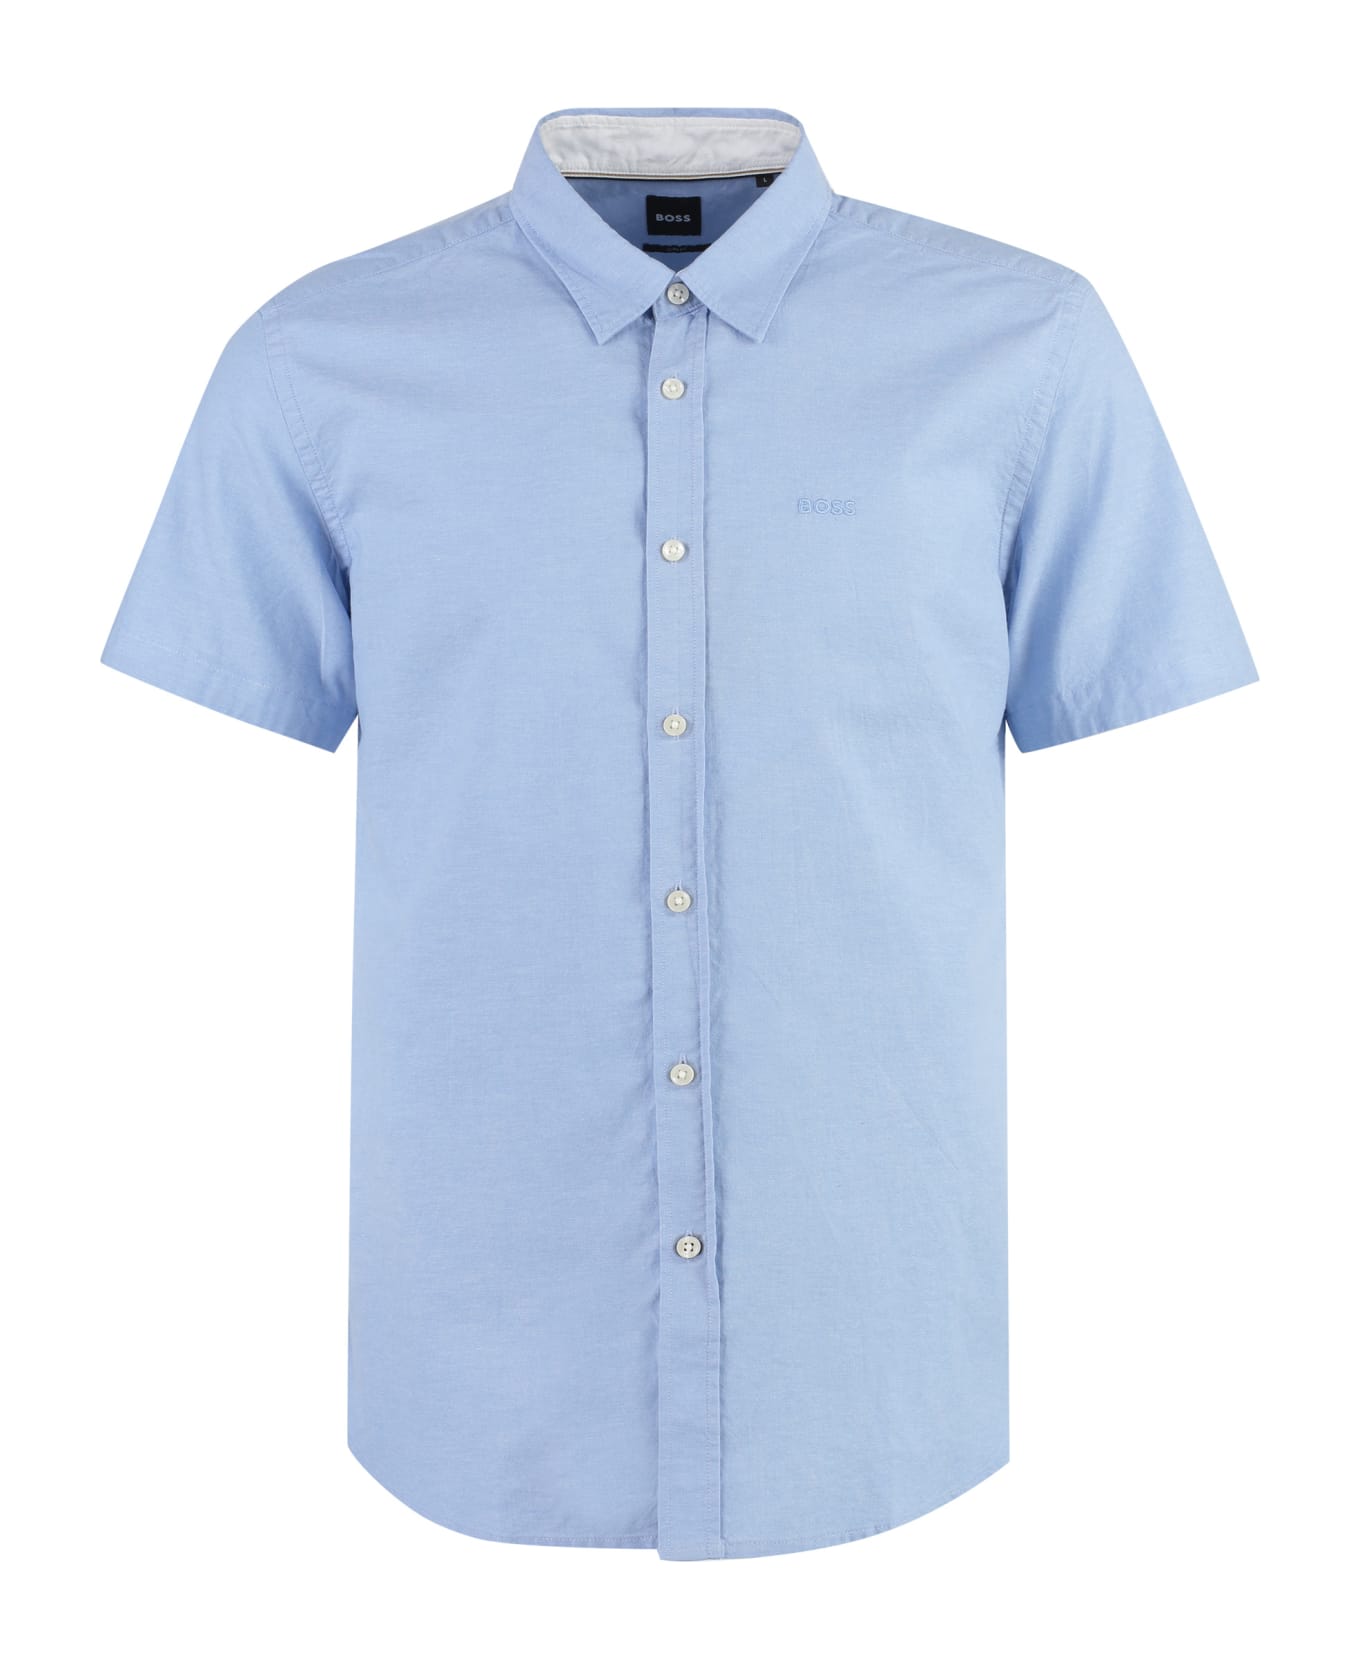 Hugo Boss Short Sleeve Cotton Shirt - Light Blue